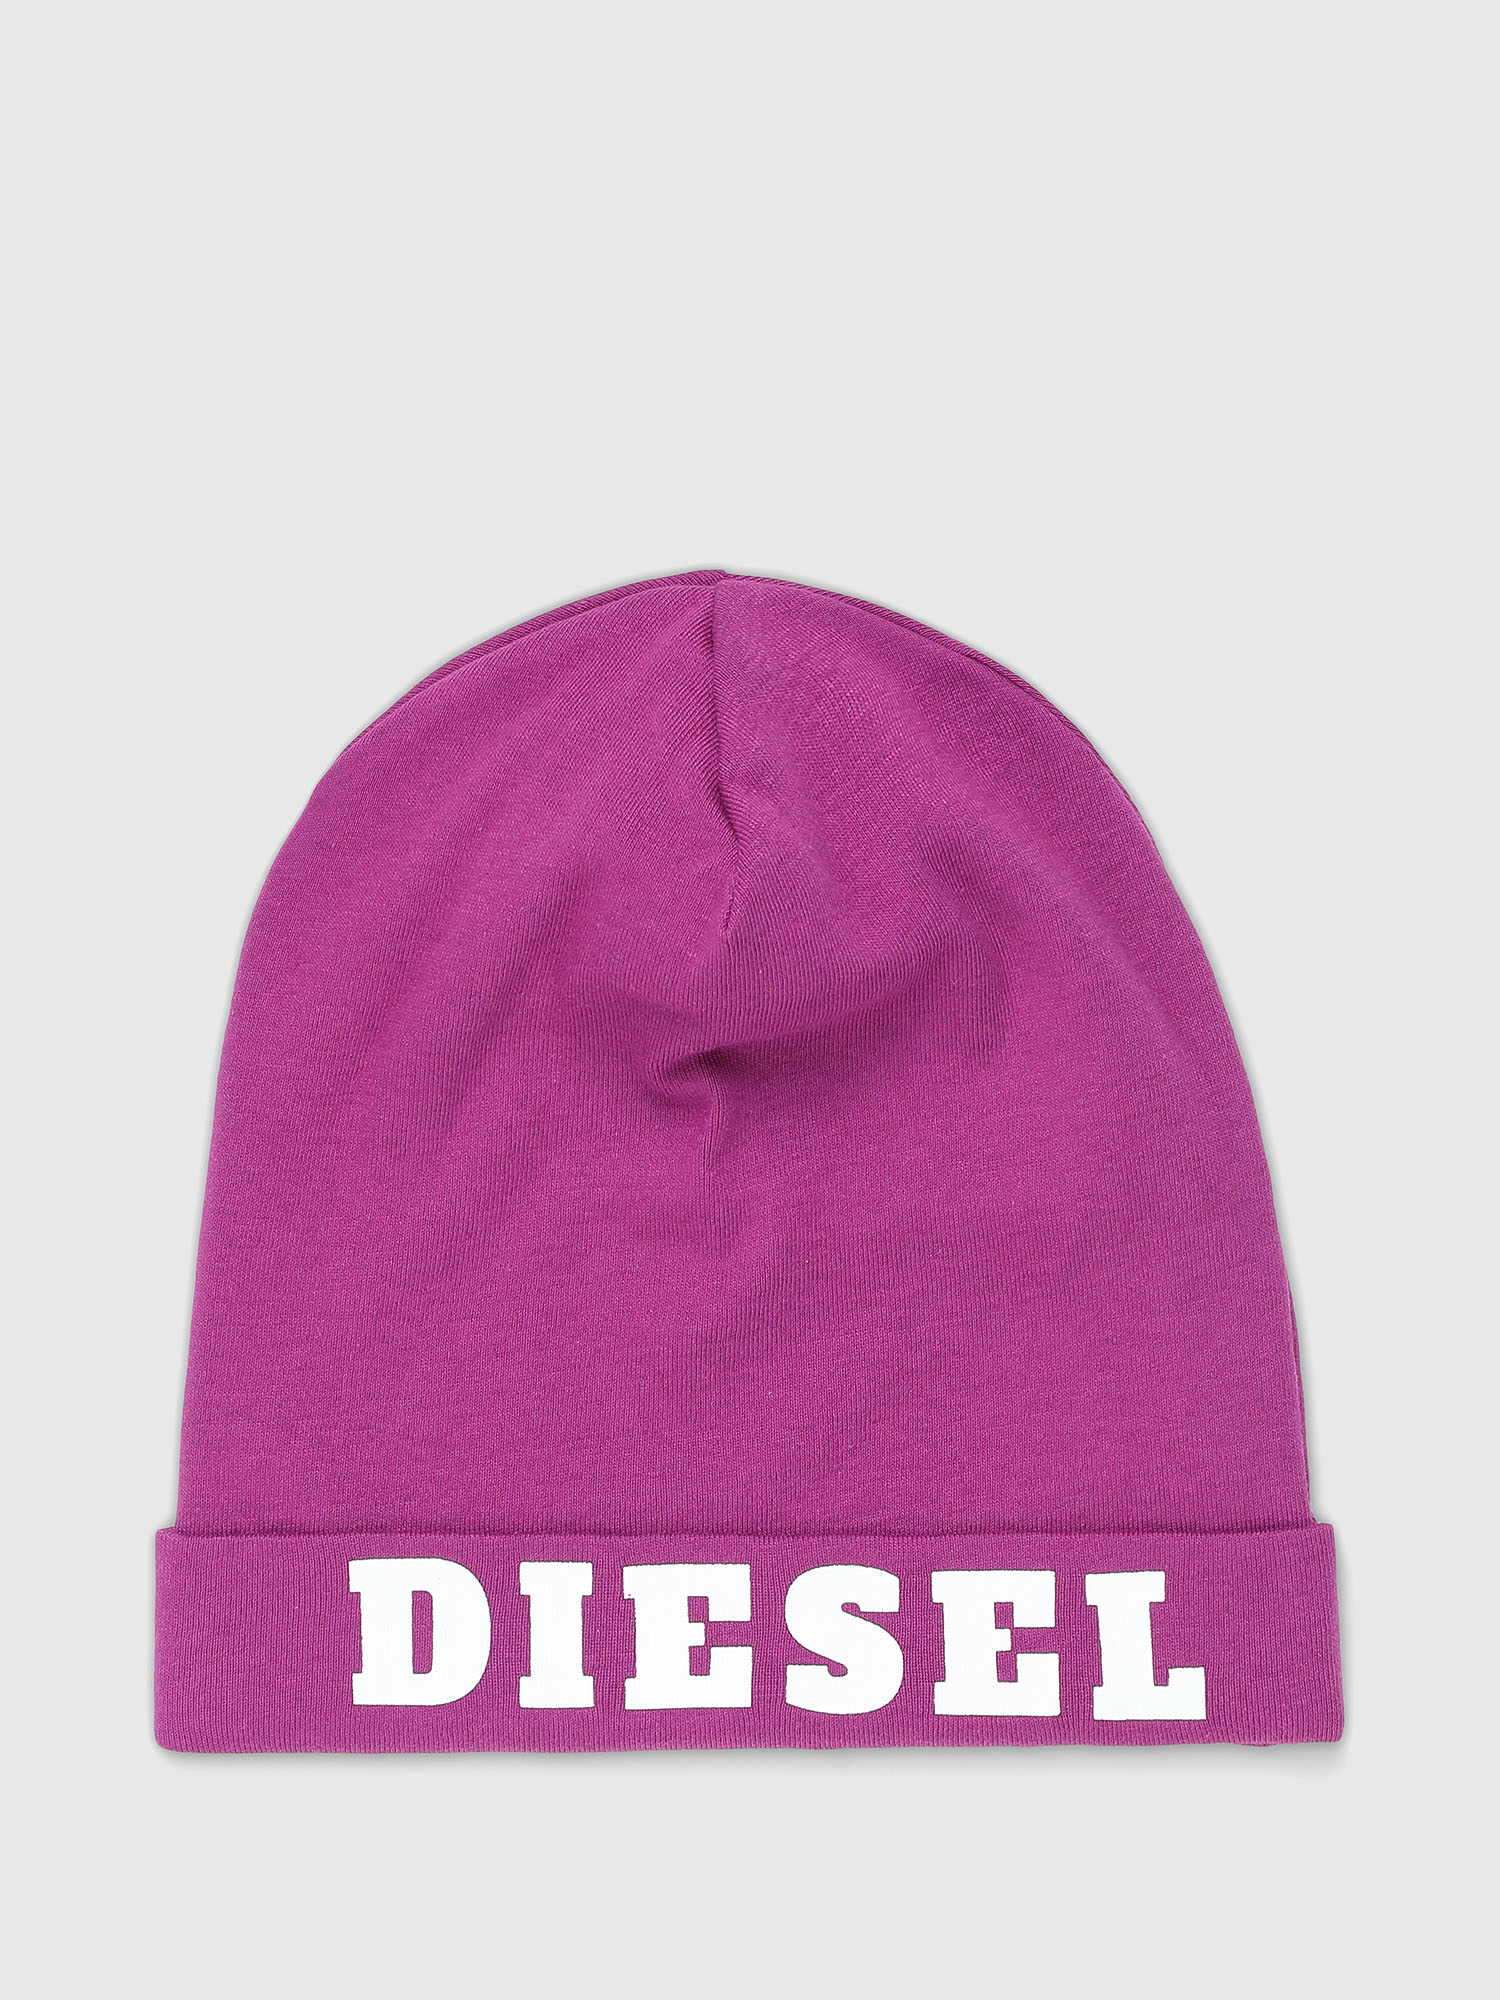 Diesel - FESTYB, Violet - Image 1